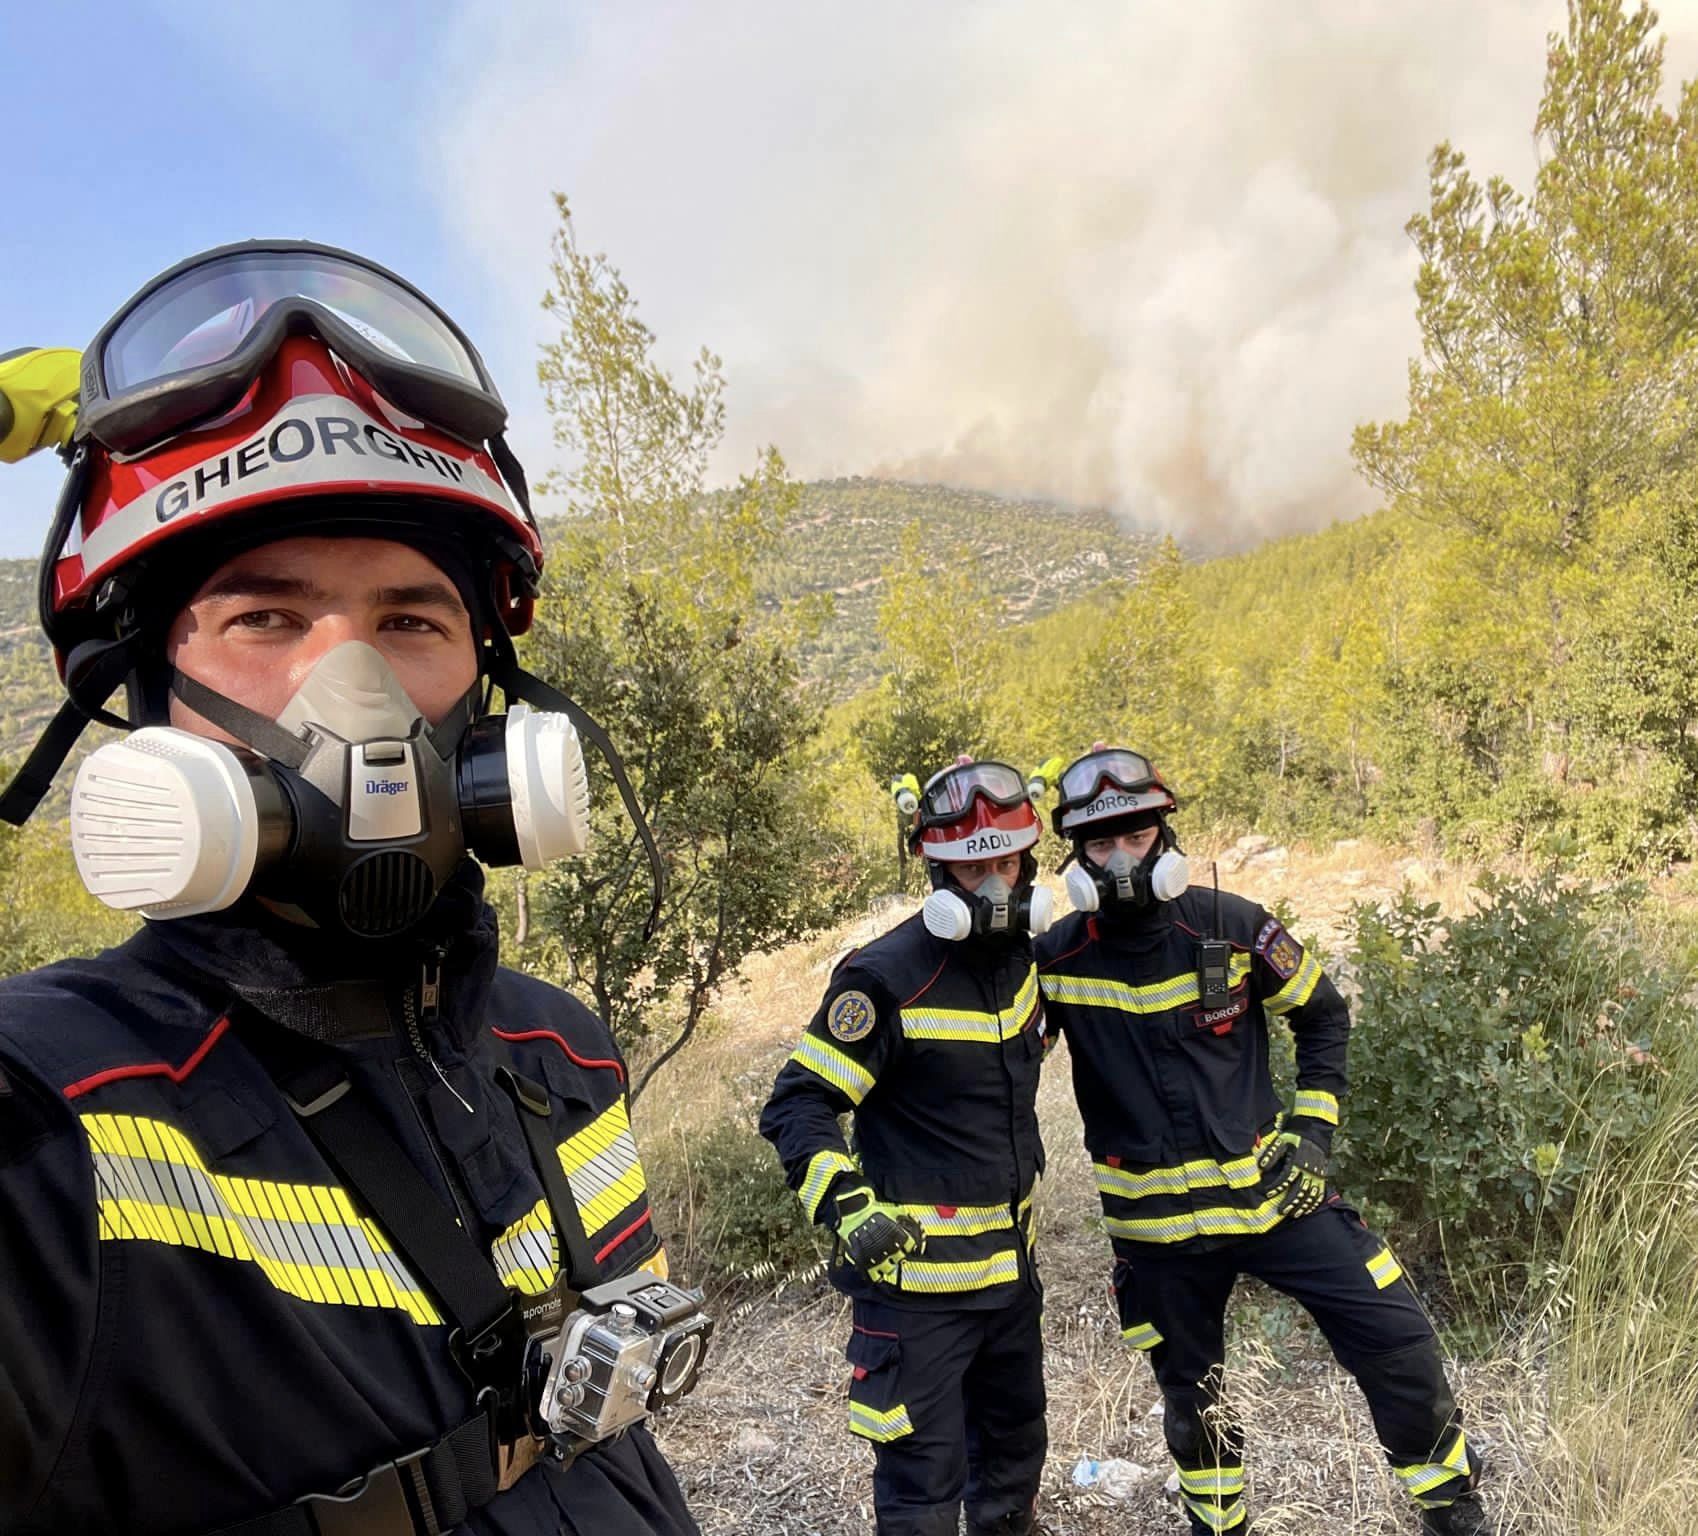 ΦΩΤΟΓΡΑΦΙΑ: Ο Ραούλ, ο αρχηγός της ομάδας των πυροσβεστών του Σίμπιου που μάχονται με τις πυρκαγιές στην Ελλάδα